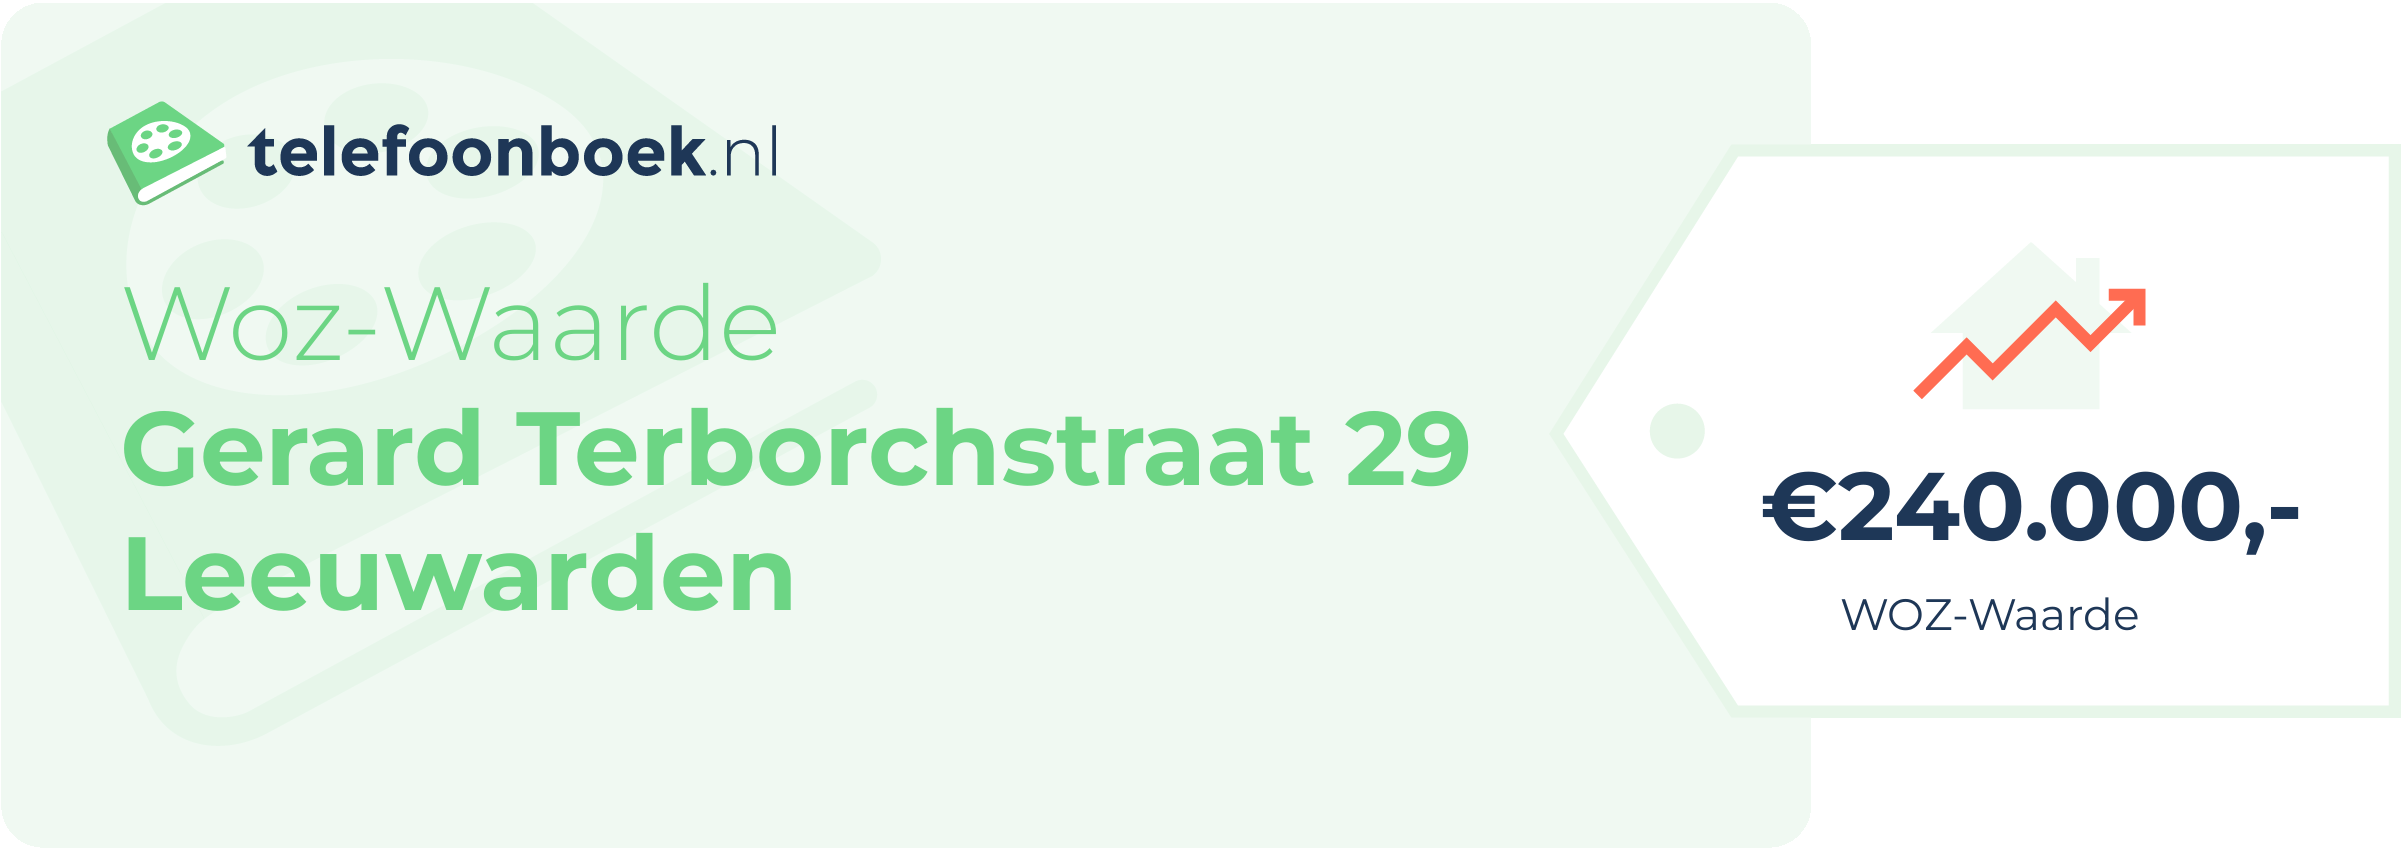 WOZ-waarde Gerard Terborchstraat 29 Leeuwarden